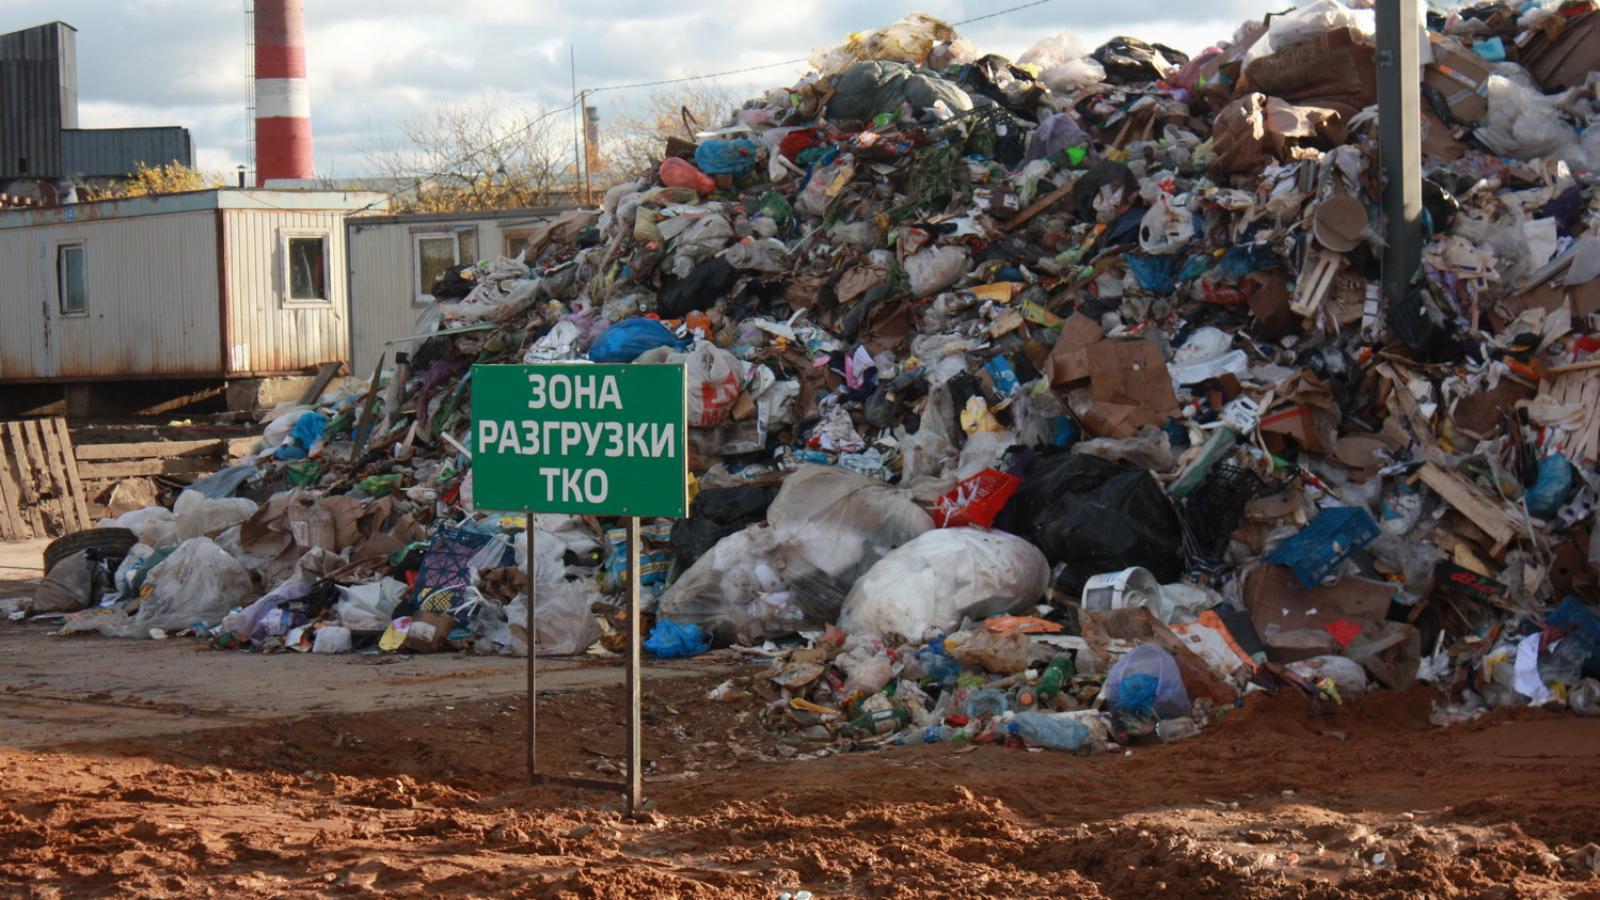  Вологжанам можно выдохнуть: в город не будут свозить мусор из Москвы